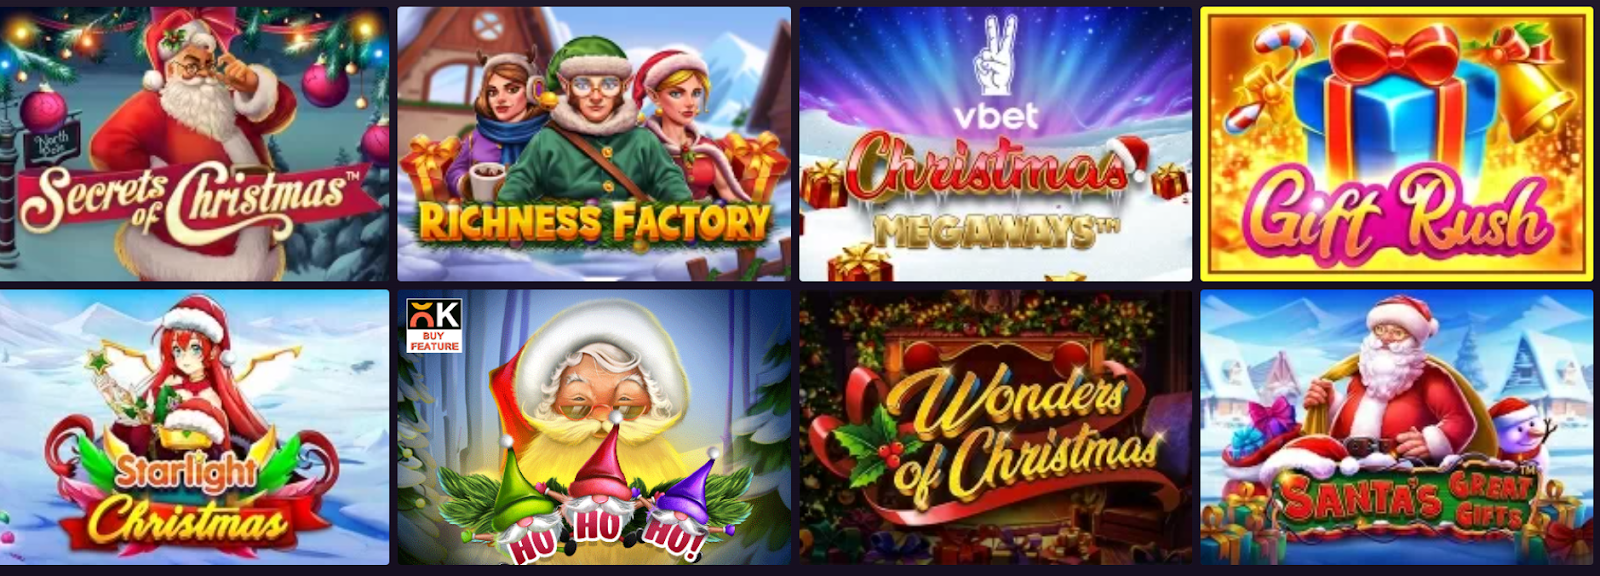 Vbet Casino é Confiável & Codigo Promocional Vbet